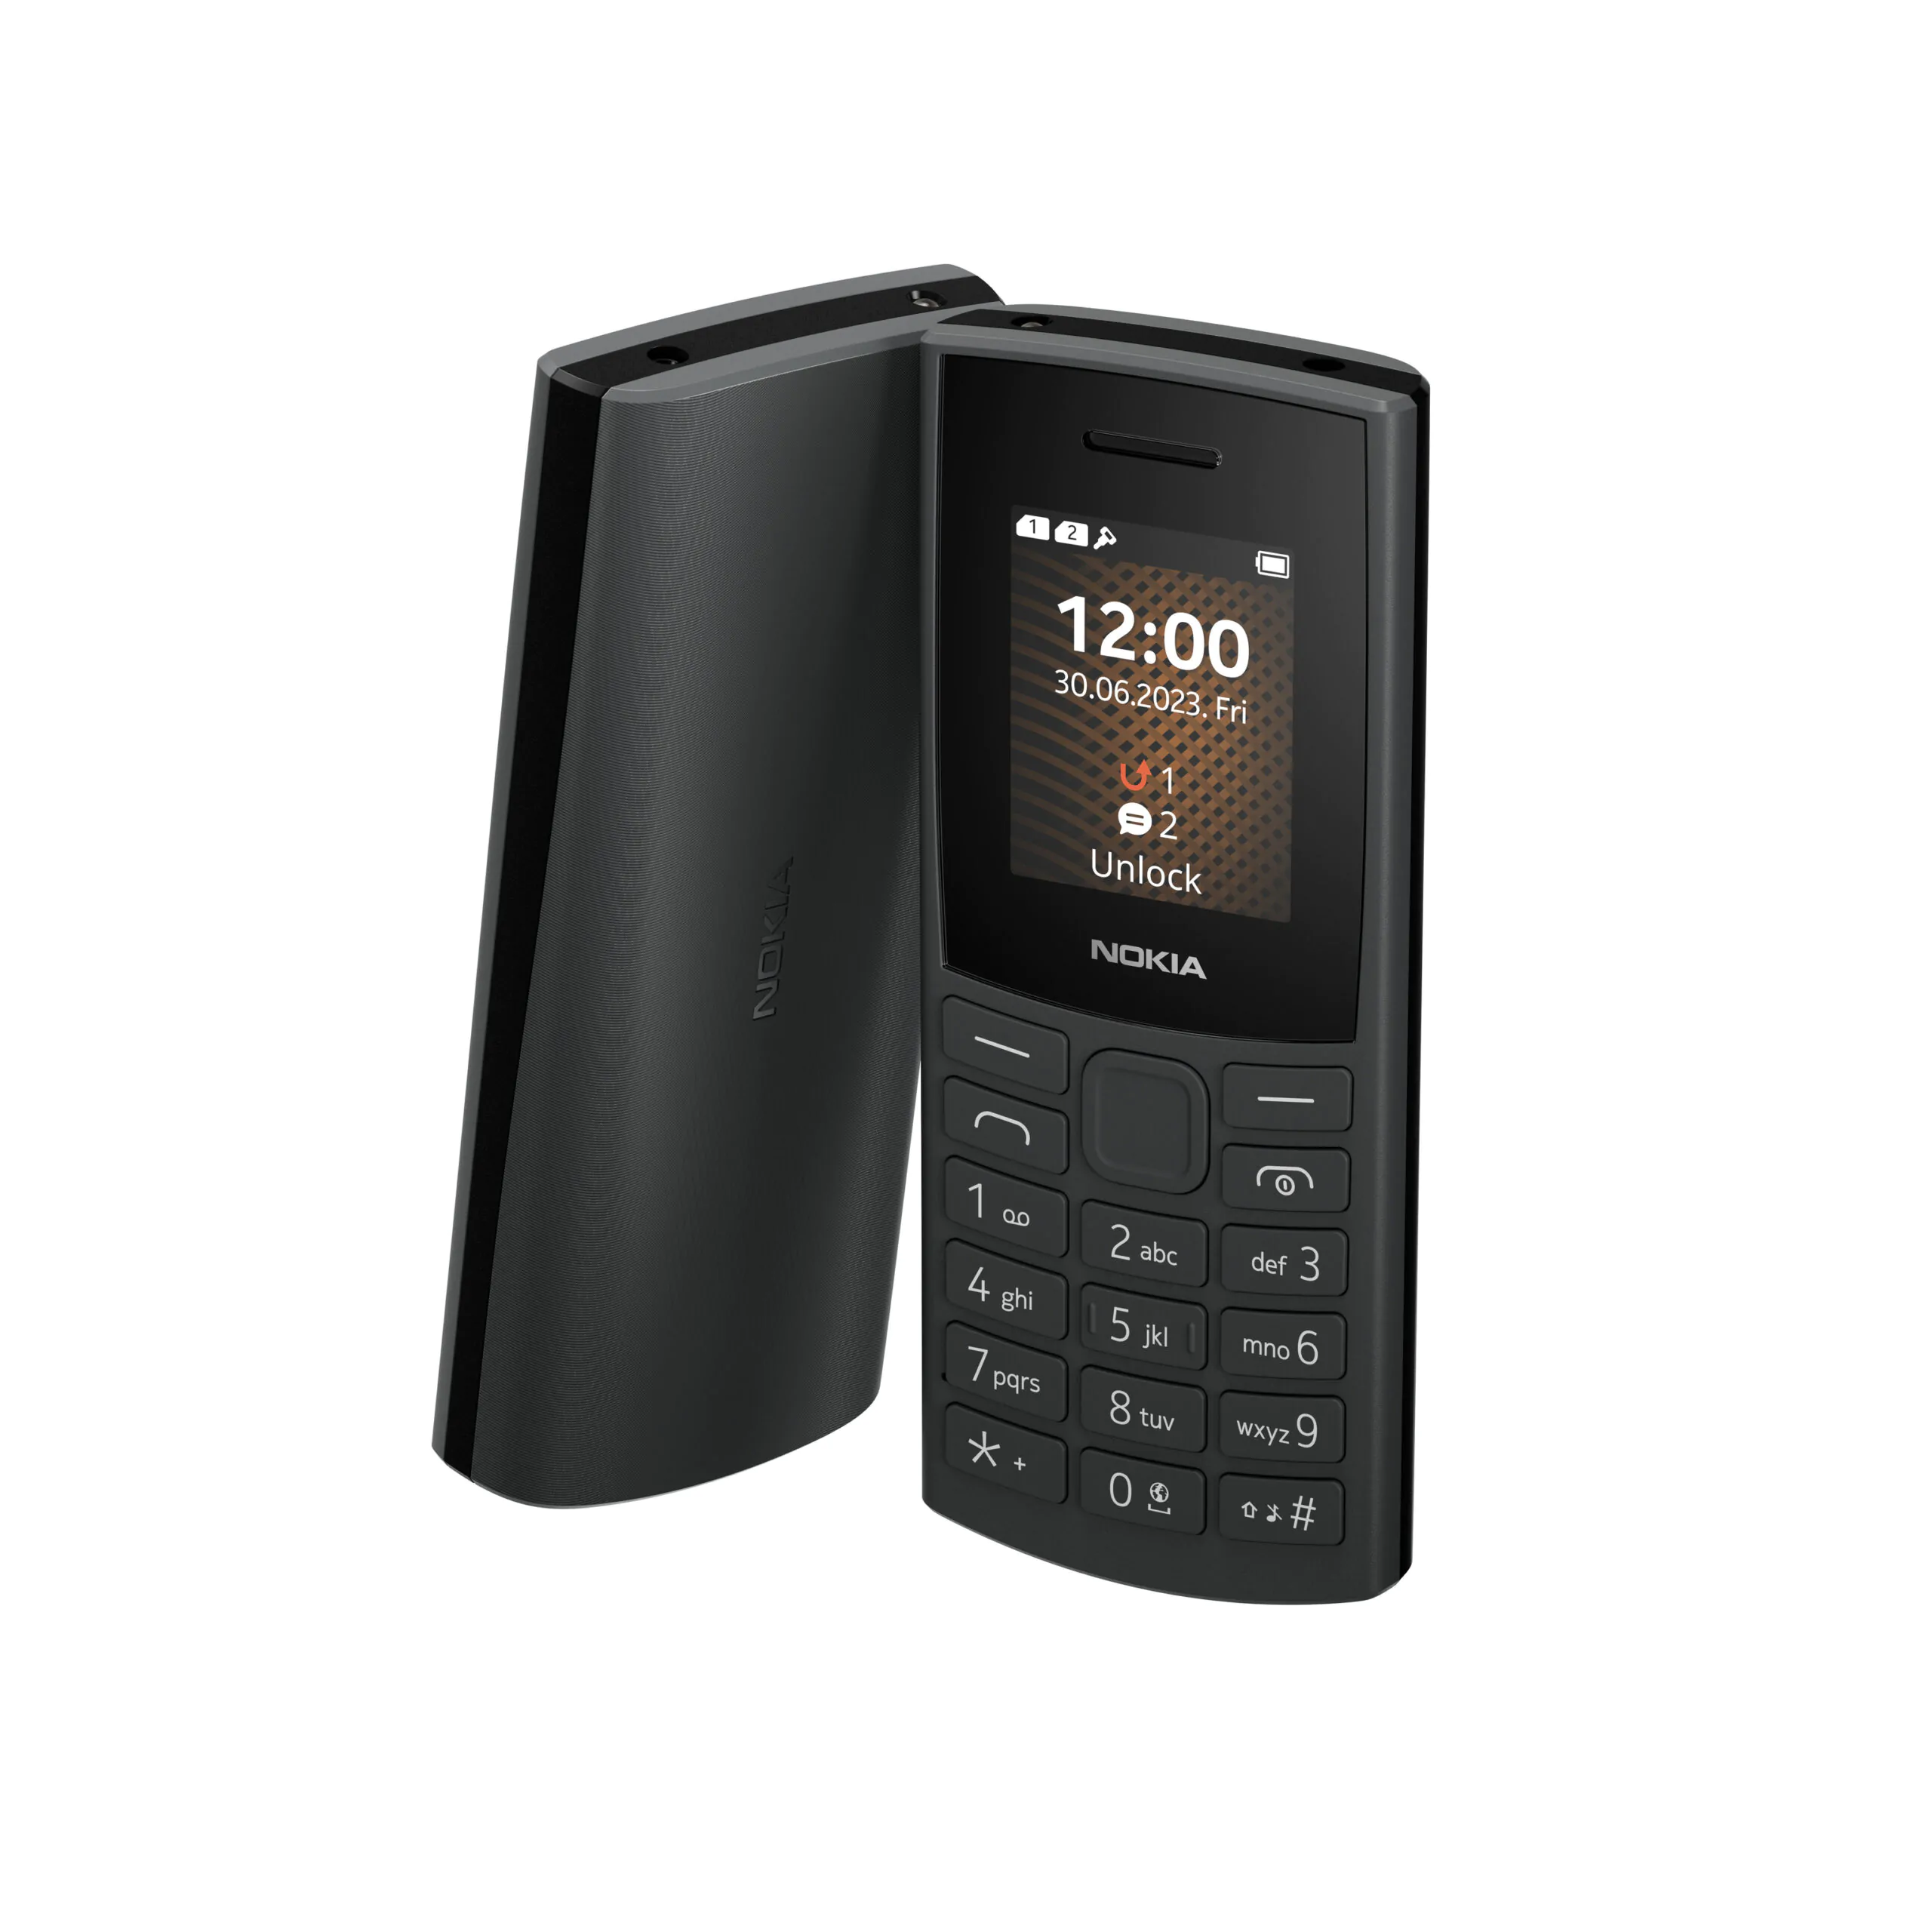 Nokia 105 4G 3 scaled | Nokia 105 4G | โนเกียส่งฟีเจอร์โฟน 2 รุ่นใหม่ Nokia 110 4G และ 105 4G ตอบรับมือถือปุ่มกดยังมีดีมานด์